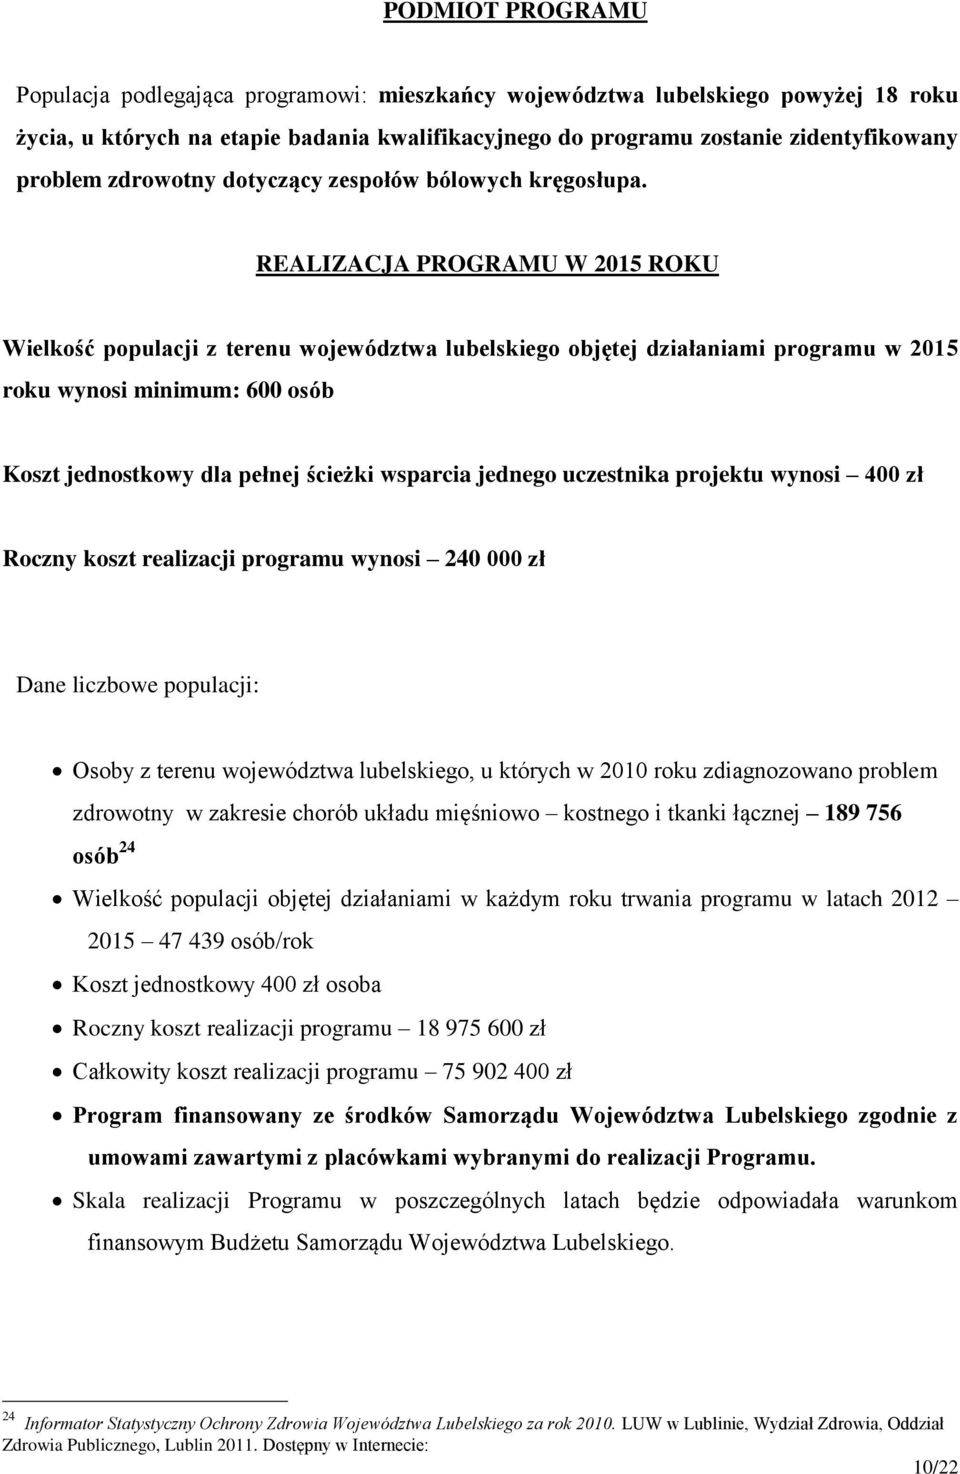 REALIZACJA PROGRAMU W 2015 ROKU Wielkość populacji z terenu województwa lubelskiego objętej działaniami programu w 2015 roku wynosi minimum: 600 osób Koszt jednostkowy dla pełnej ścieżki wsparcia